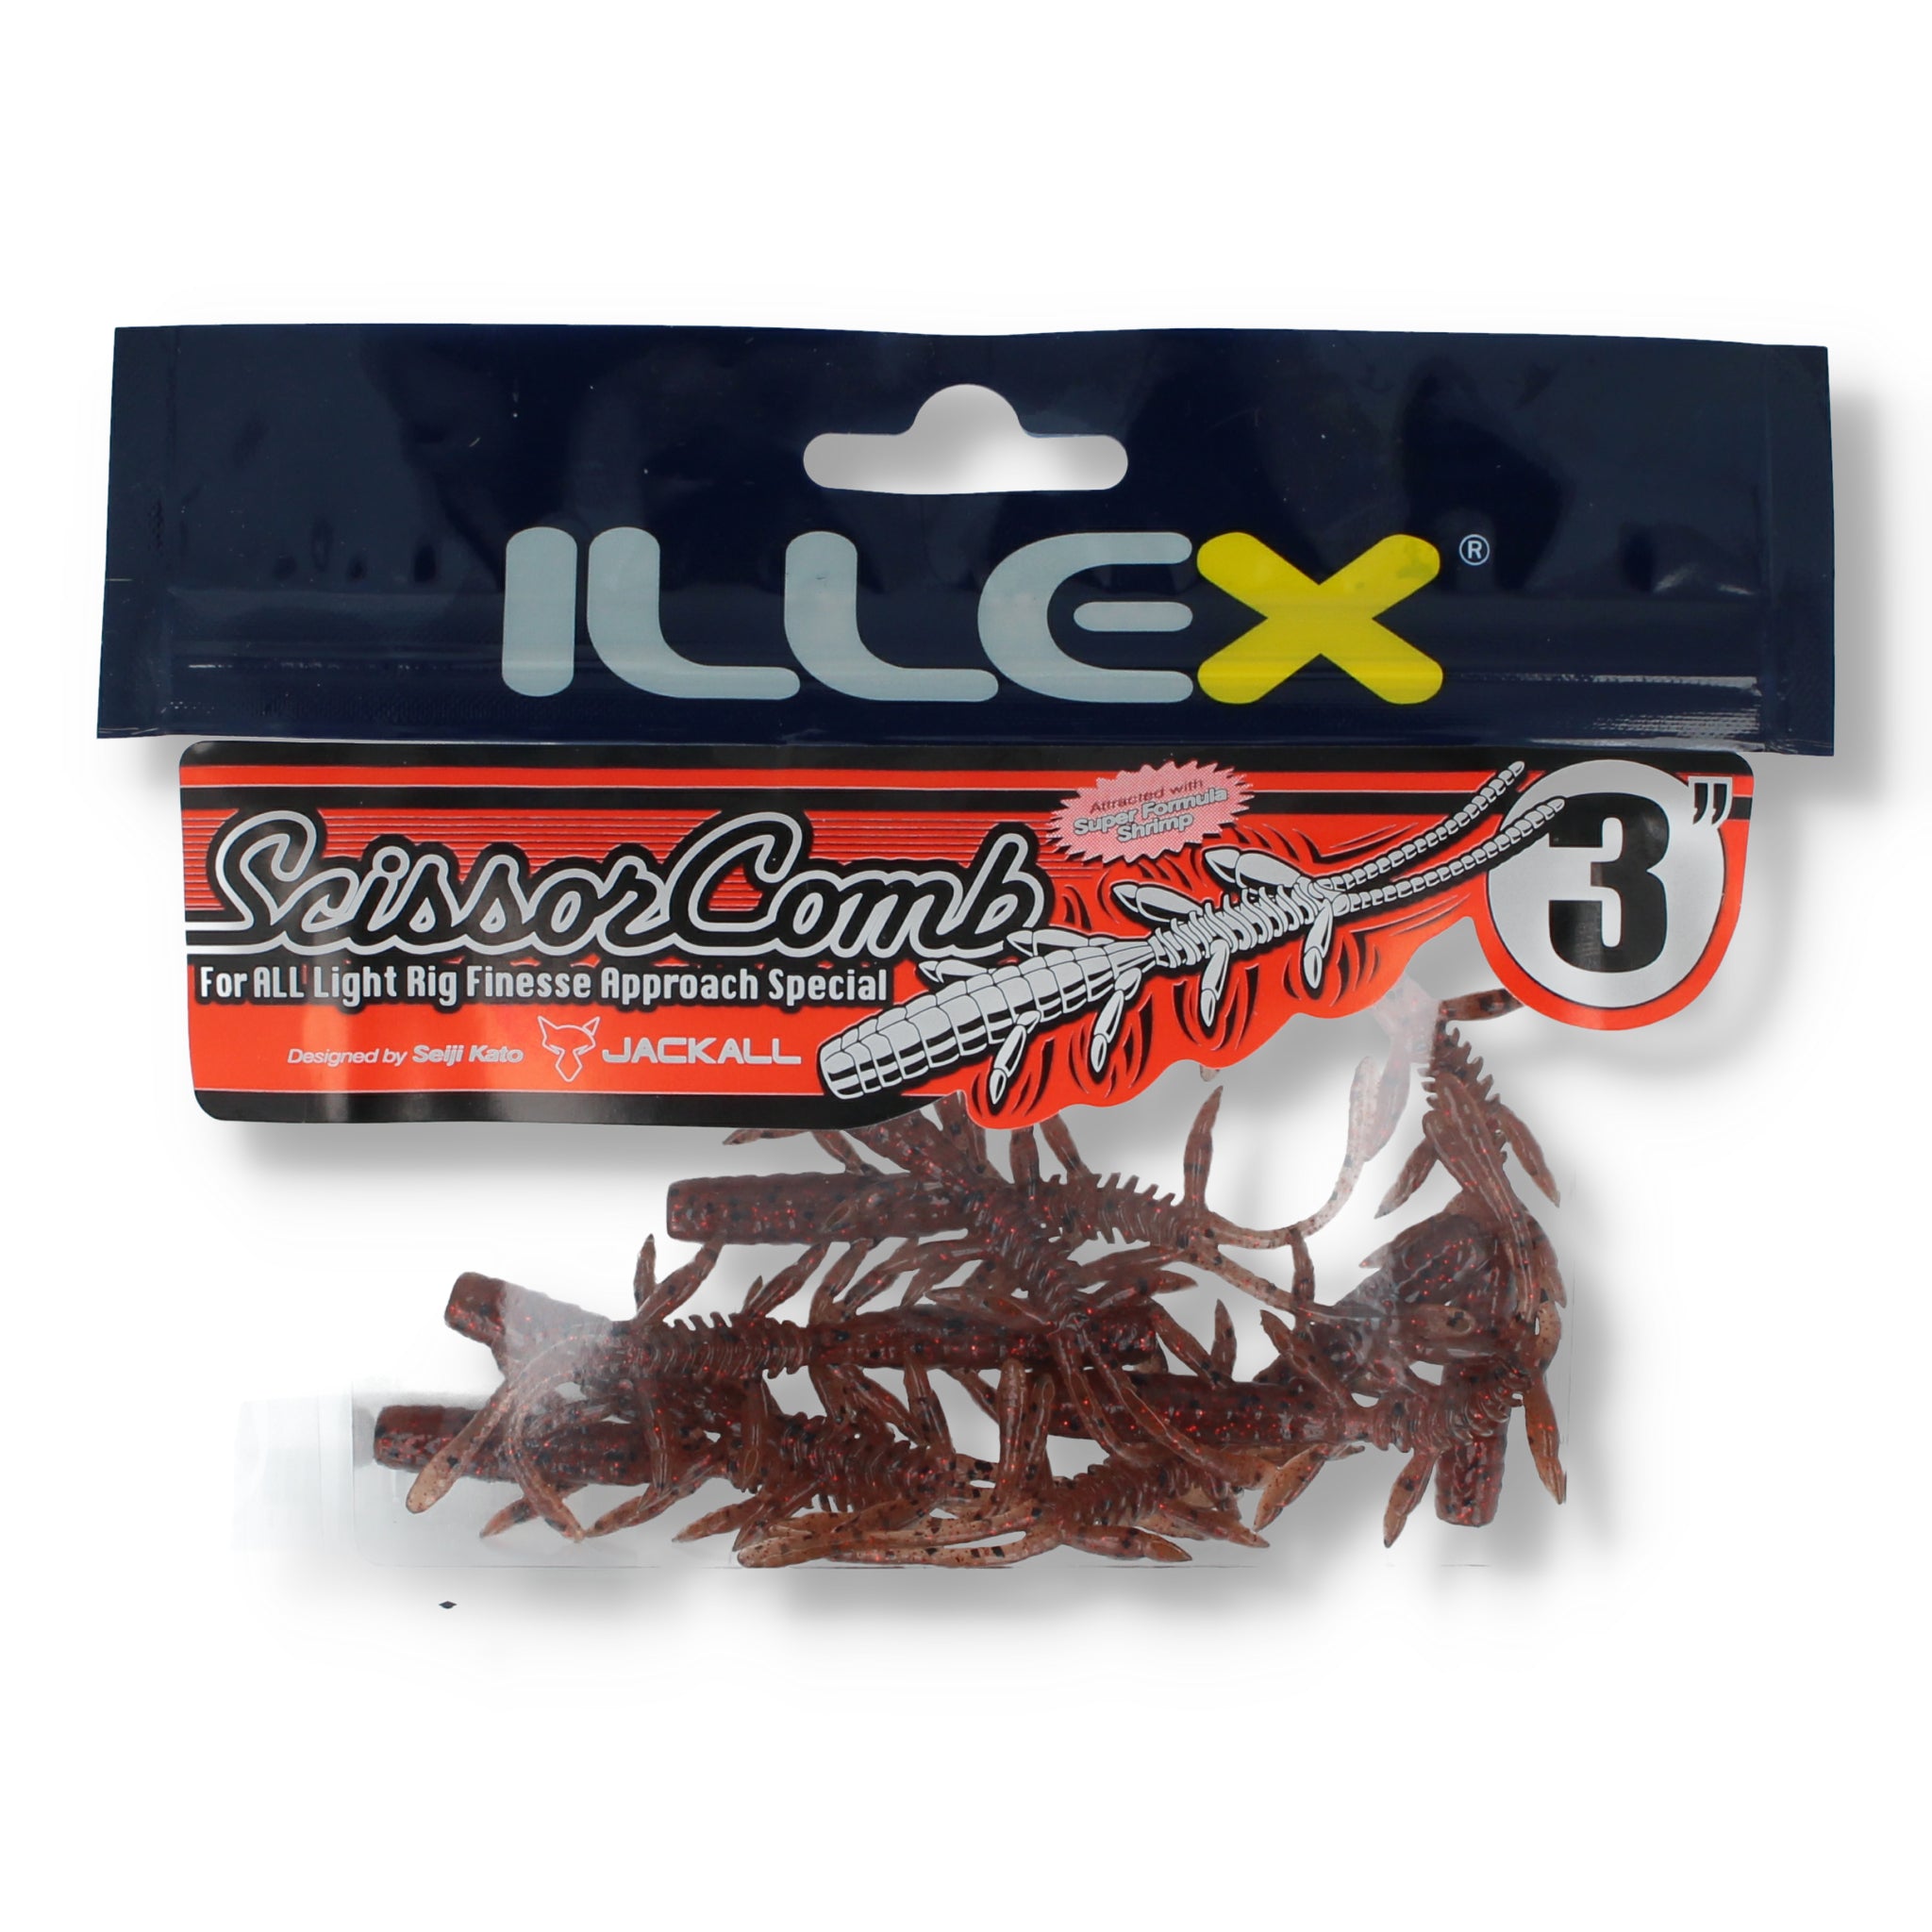 Illex Scissor Comb 3"